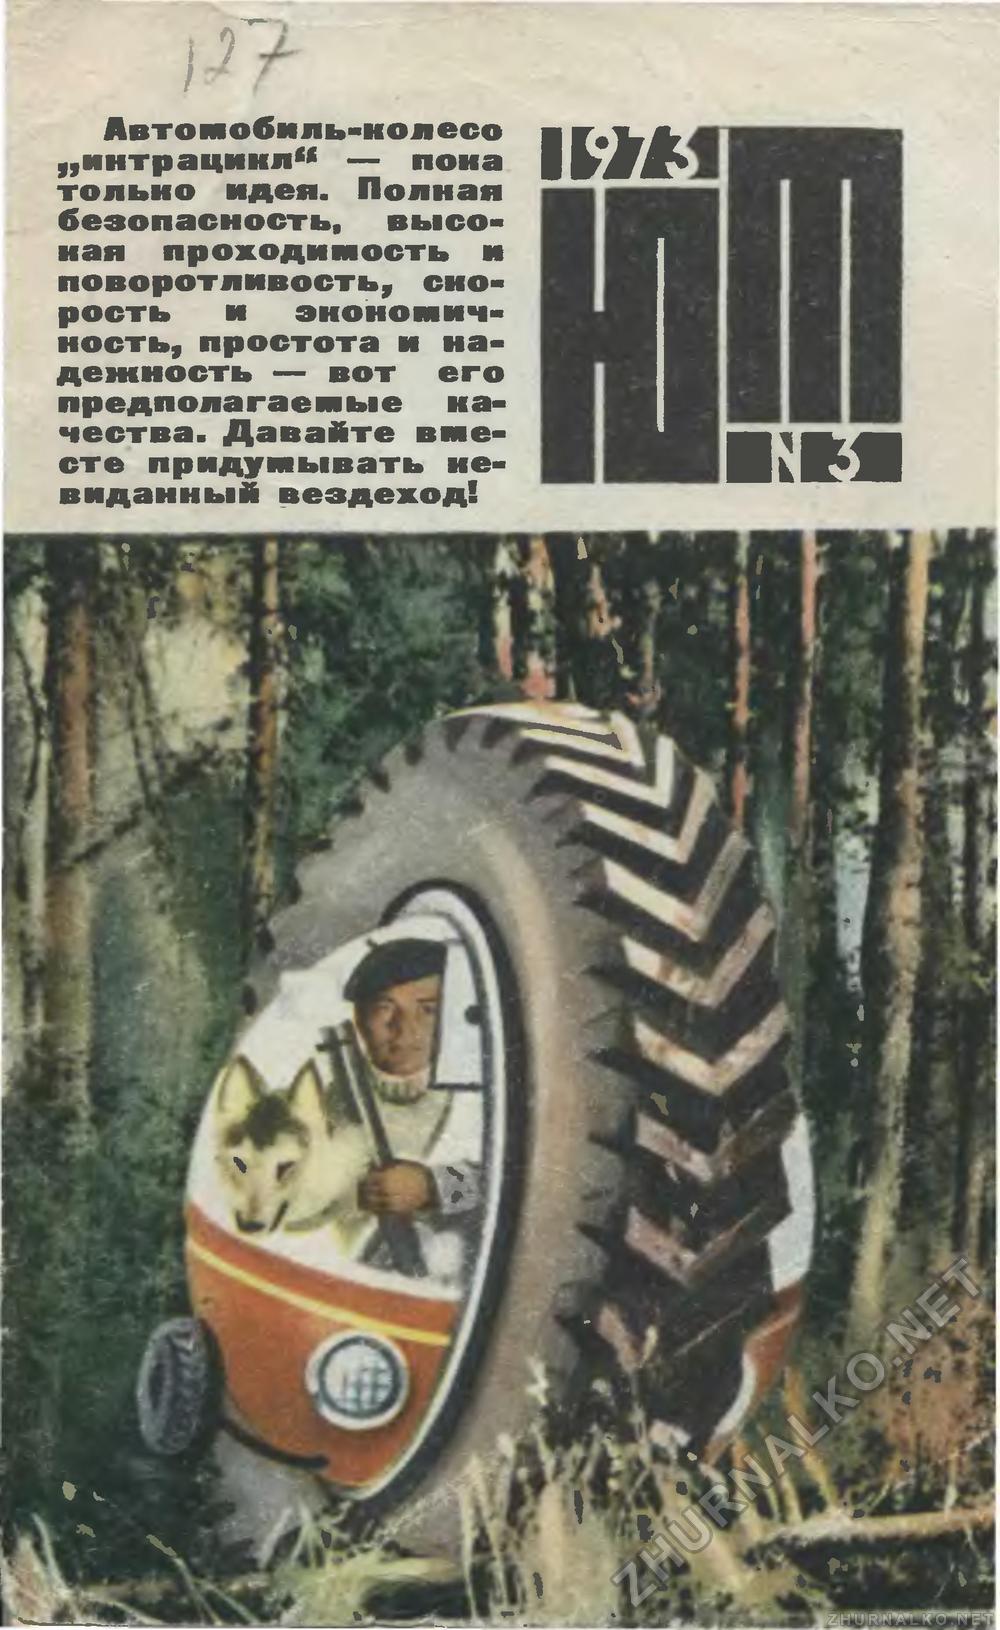   1973-03,  1